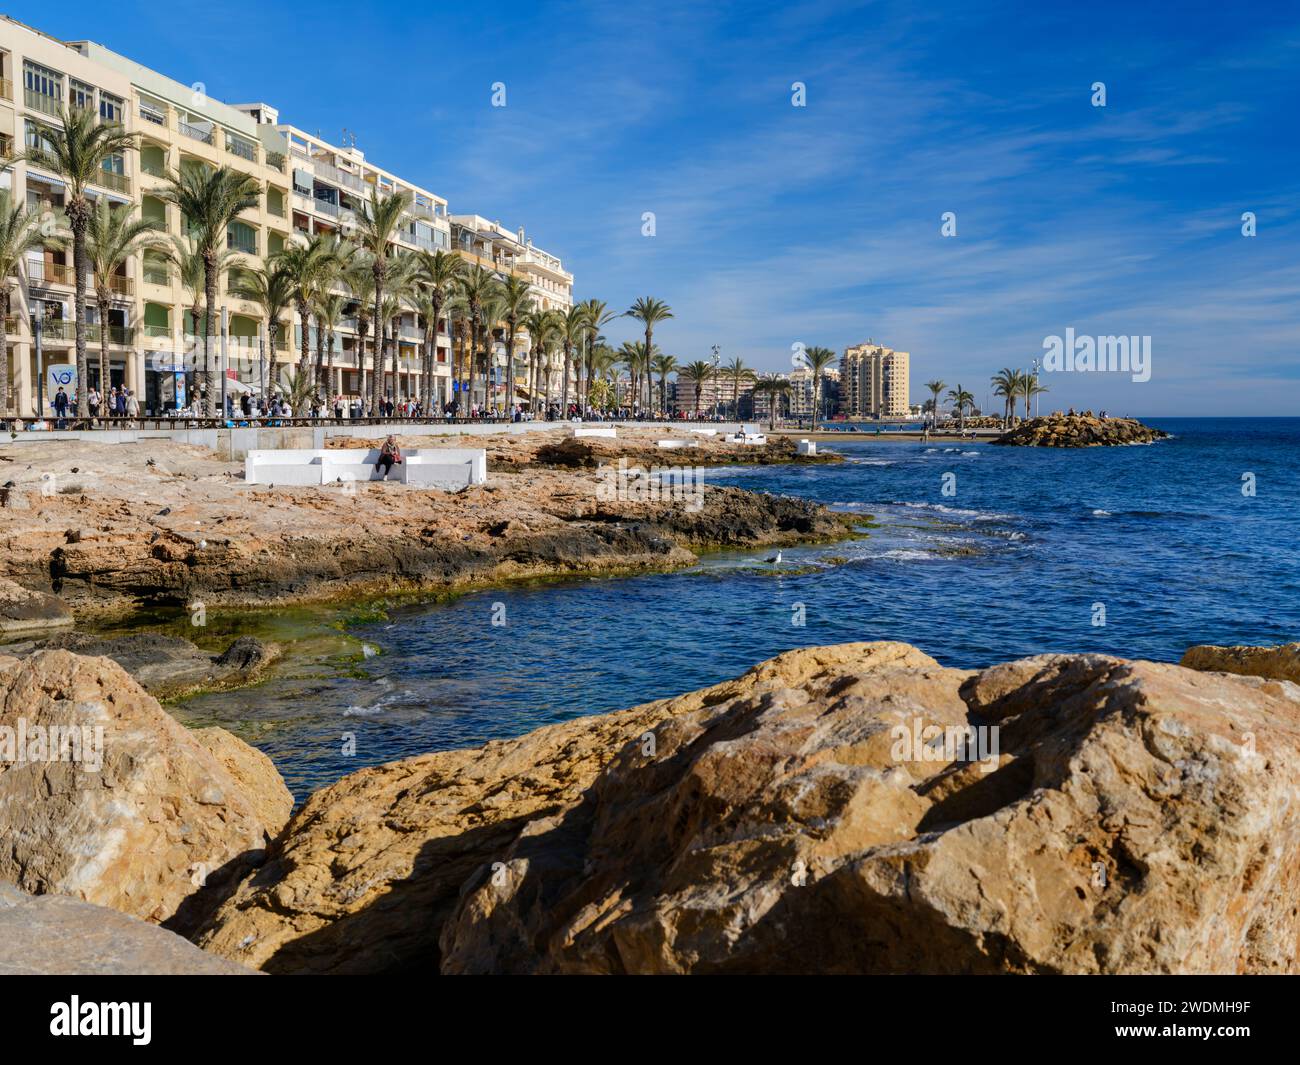 Torrevieja, Alicante, Spanien. Ein wunderschöner Tag Mitte januar an der Küste von Torrevieja, während die Menschen eine sanfte Brise vom Mittelmeer genießen. Stockfoto